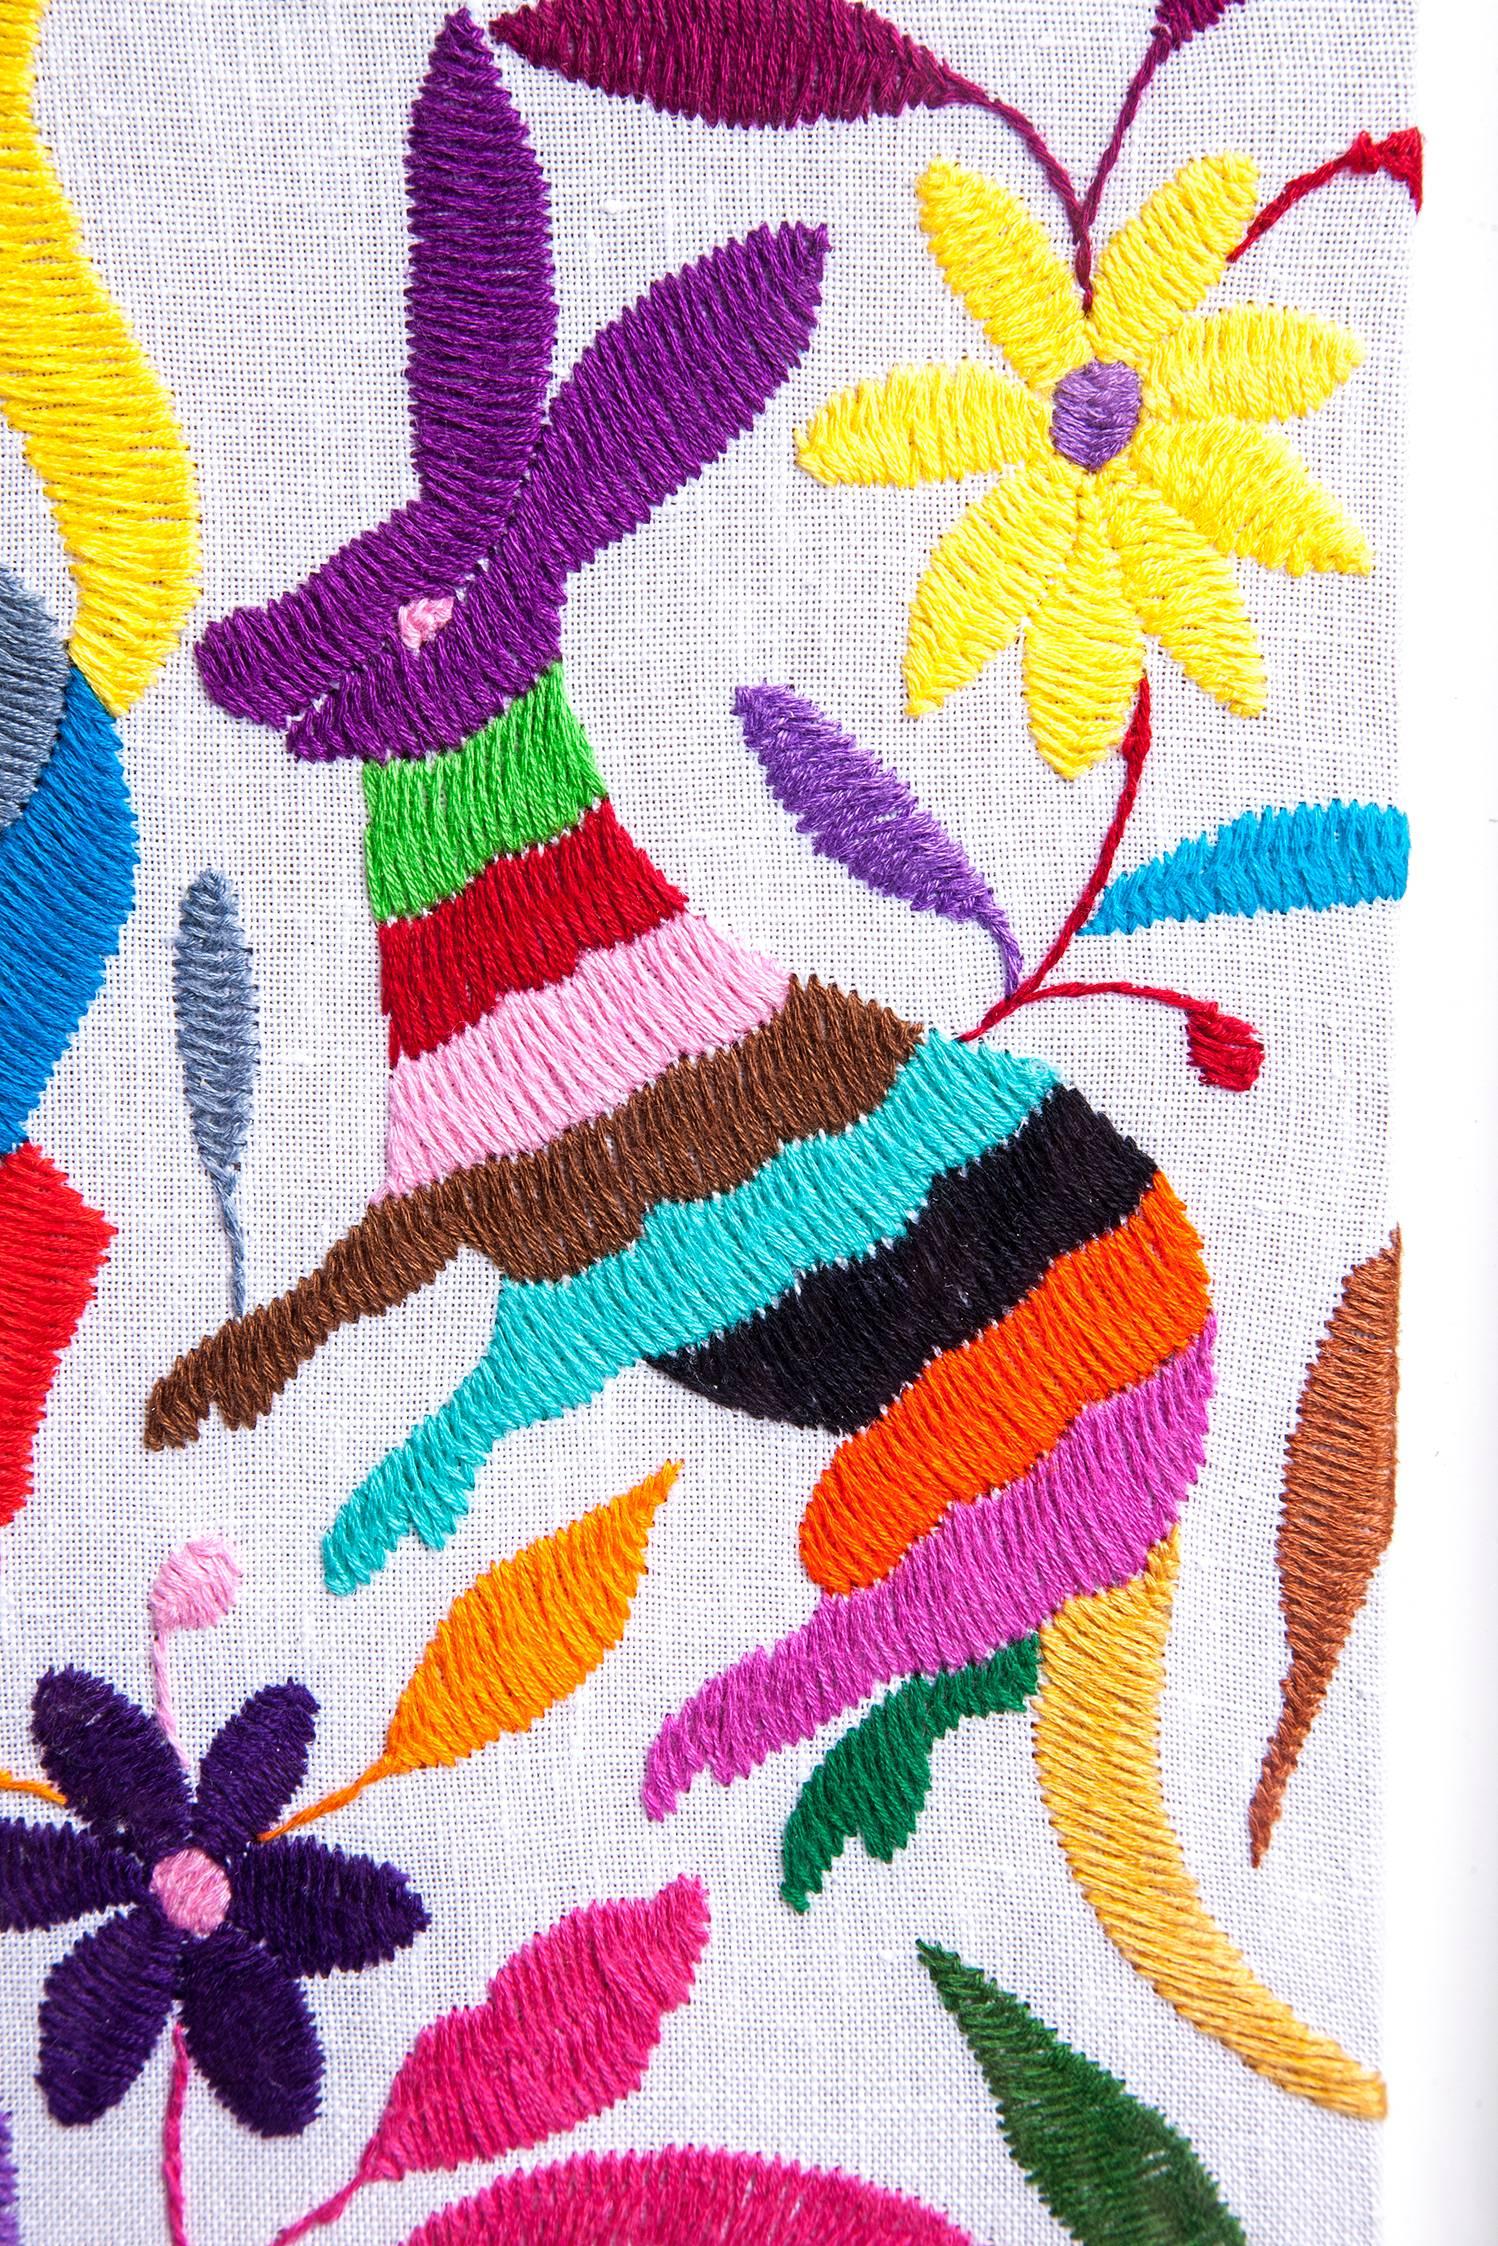 Tenango Tradicional / Textiles Mexican Folk Art Embroidery 1